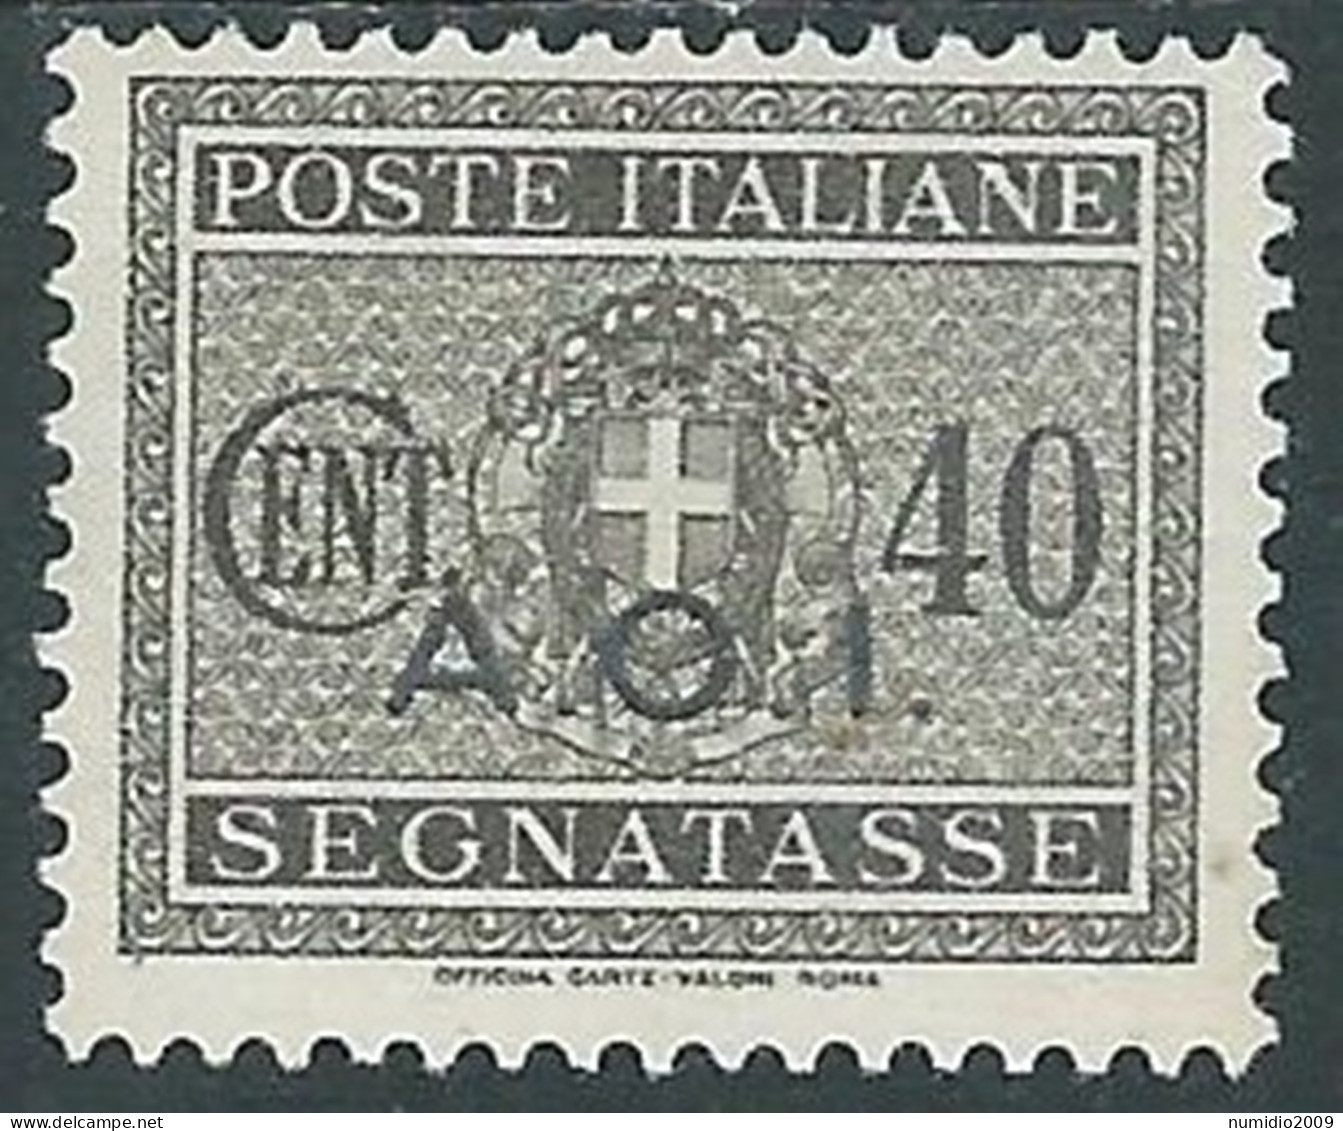 1939-40 AFRICA ORIENTALE ITALIANA SEGNATASSE 40 CENT MH * - I43-9 - Afrique Orientale Italienne